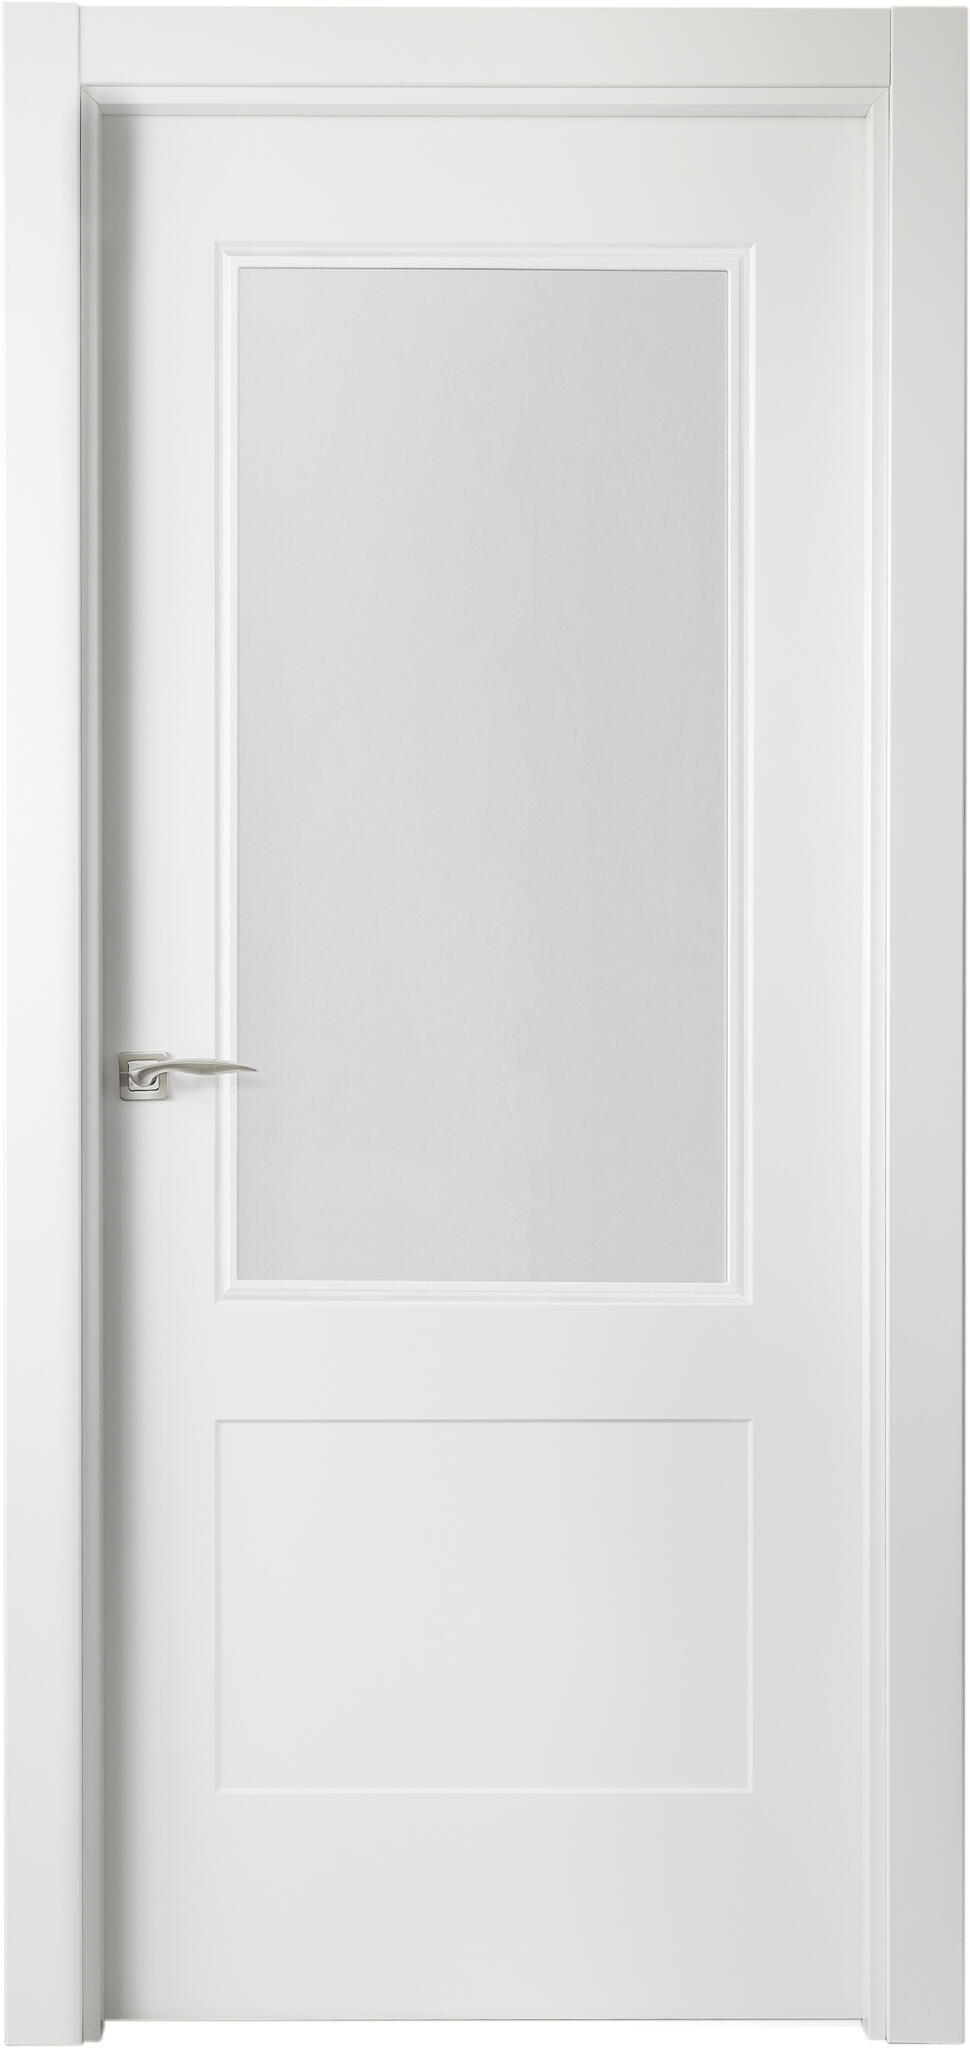 Puerta atlanta plus blanco apertura derecha con cristal de 72,5cm